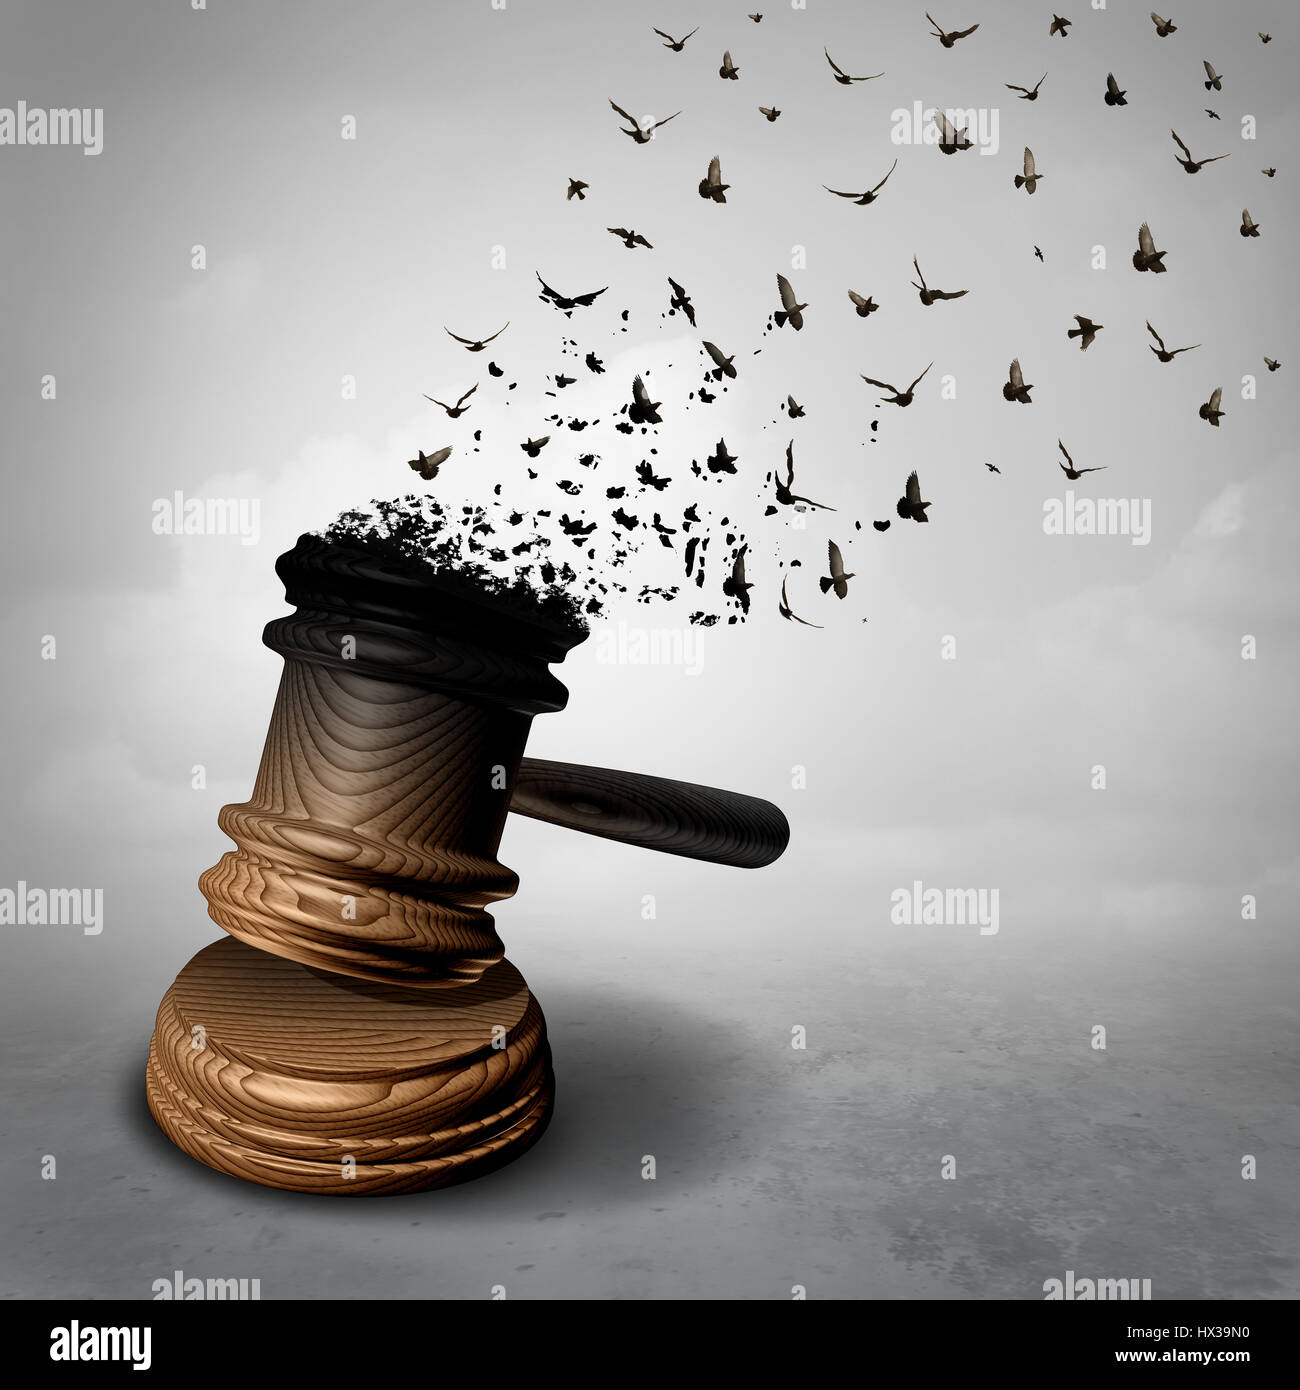 Il concetto di amnistia e diritto rifiutare o il simbolo di un quadro legale del perdono come un giudice martello o mazzuolo di essere trasformato in volo libero degli uccelli. Foto Stock